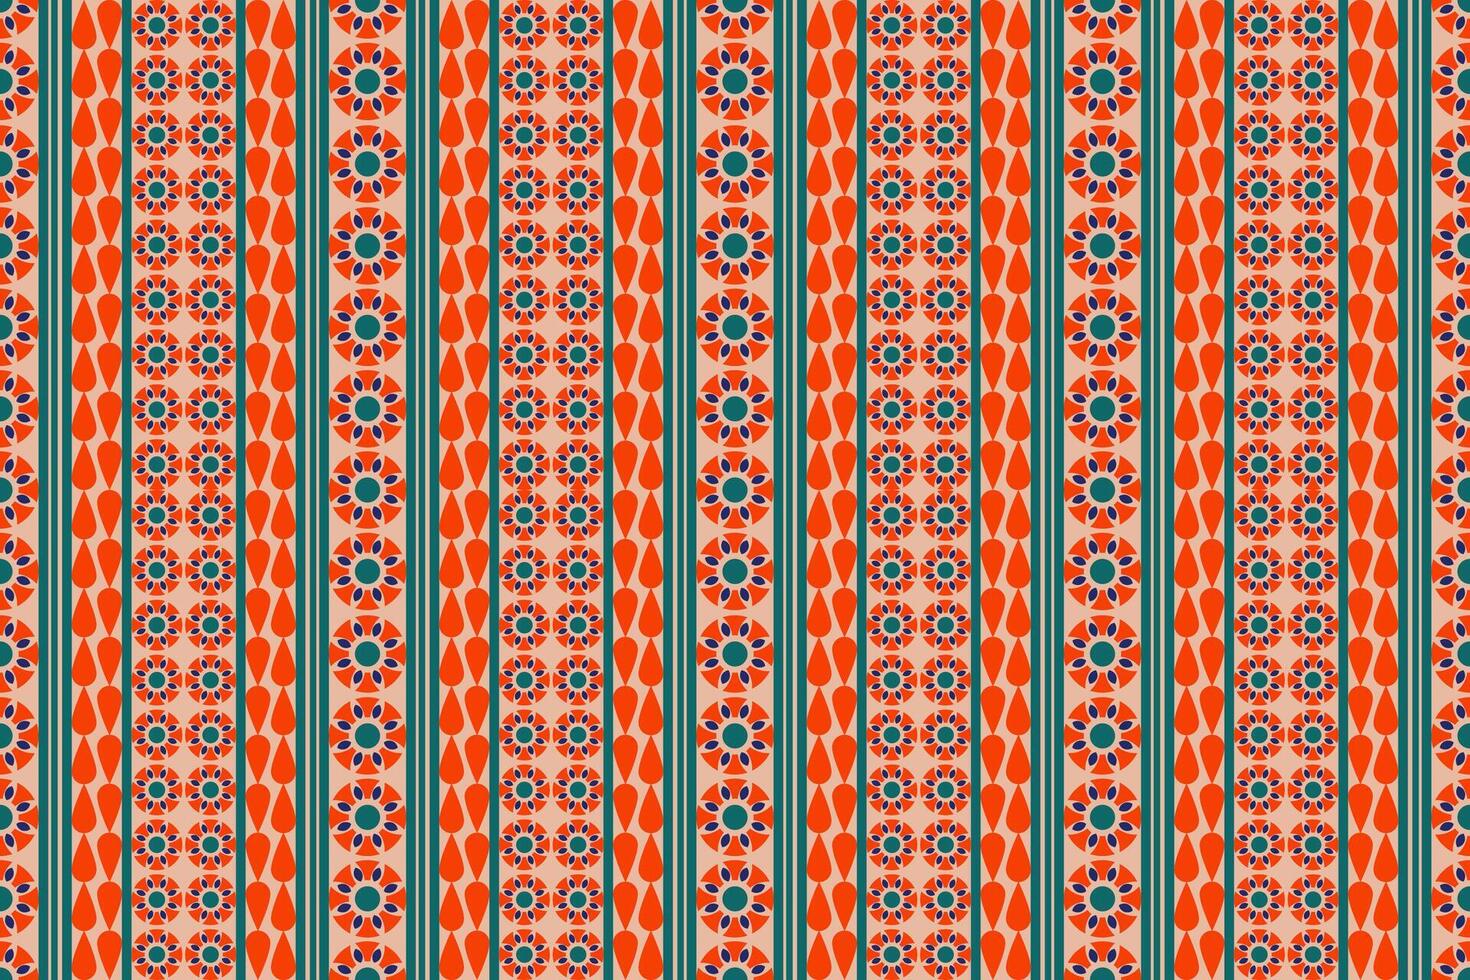 nahtlos Muster mit Formen geometrisch ethnisch orientalisch Ikat Muster traditionell Design zum hintergrund,teppich,tapete,kleidung,verpackung,batik,stoff,vektor Illustration.Stickerei Stil. vektor